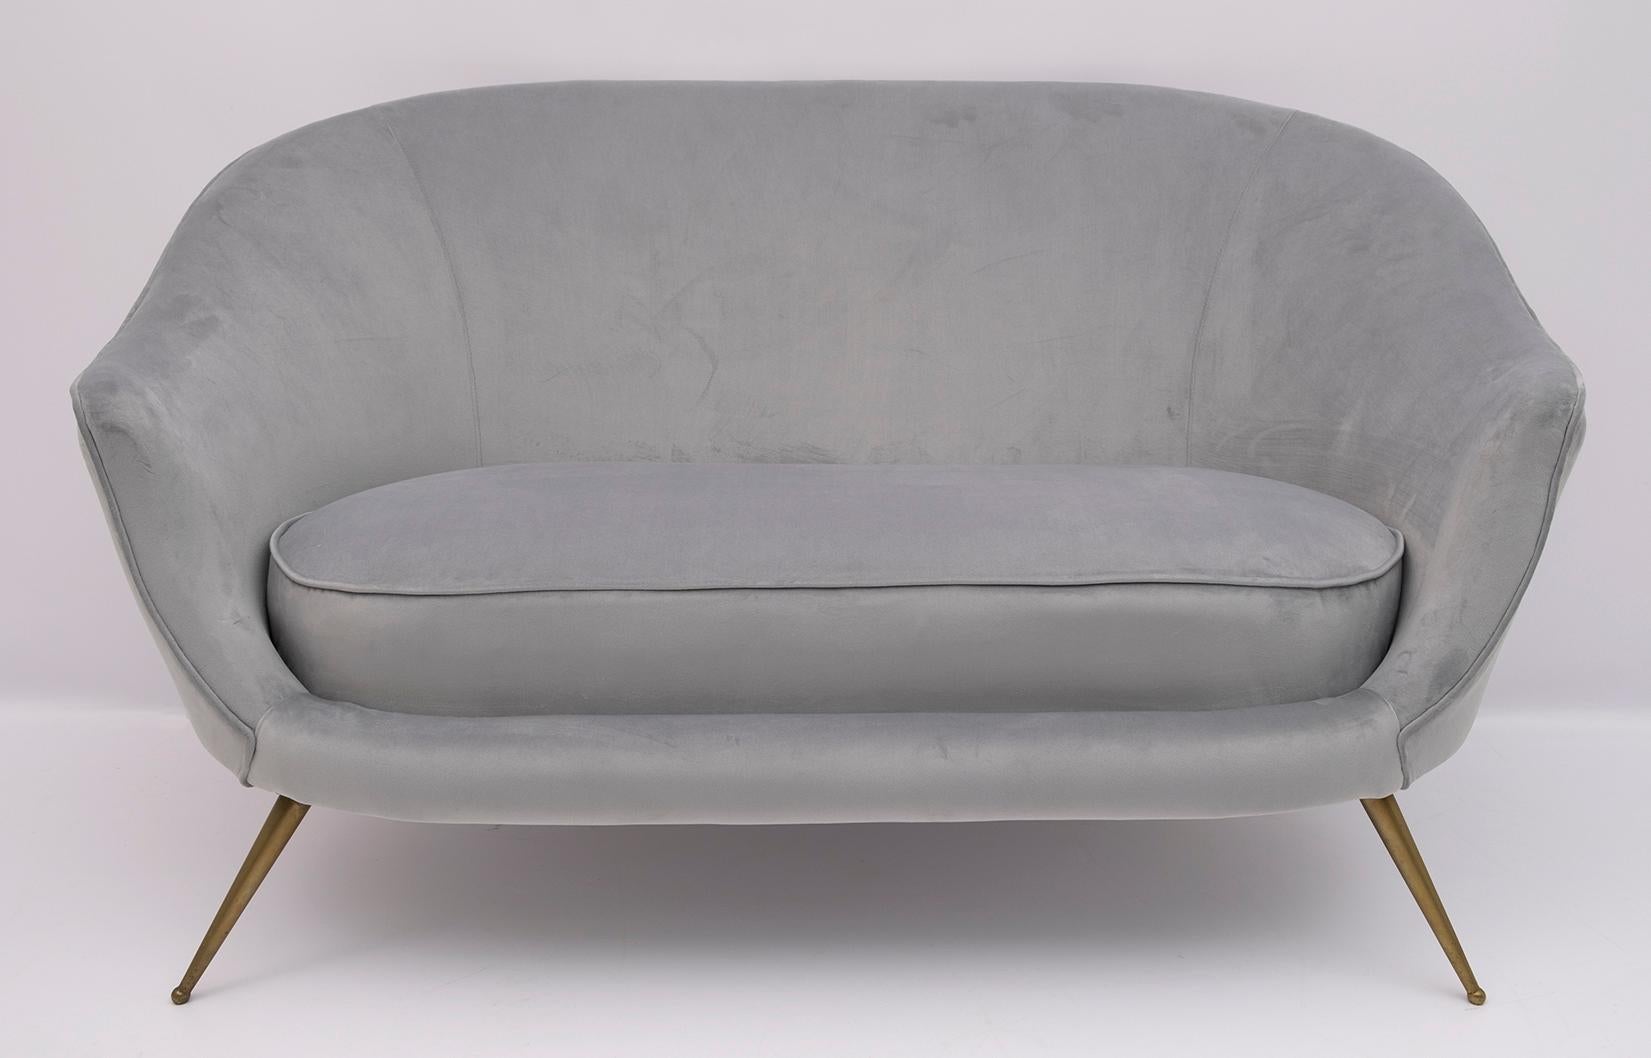 Belle paire de fauteuils et canapé courbe conçus par Federico Munari au début des années 1950. La tapisserie a été refaite en velours.

Le canapé mesure cm : L 147 x P 85 x H 87 x S 42.